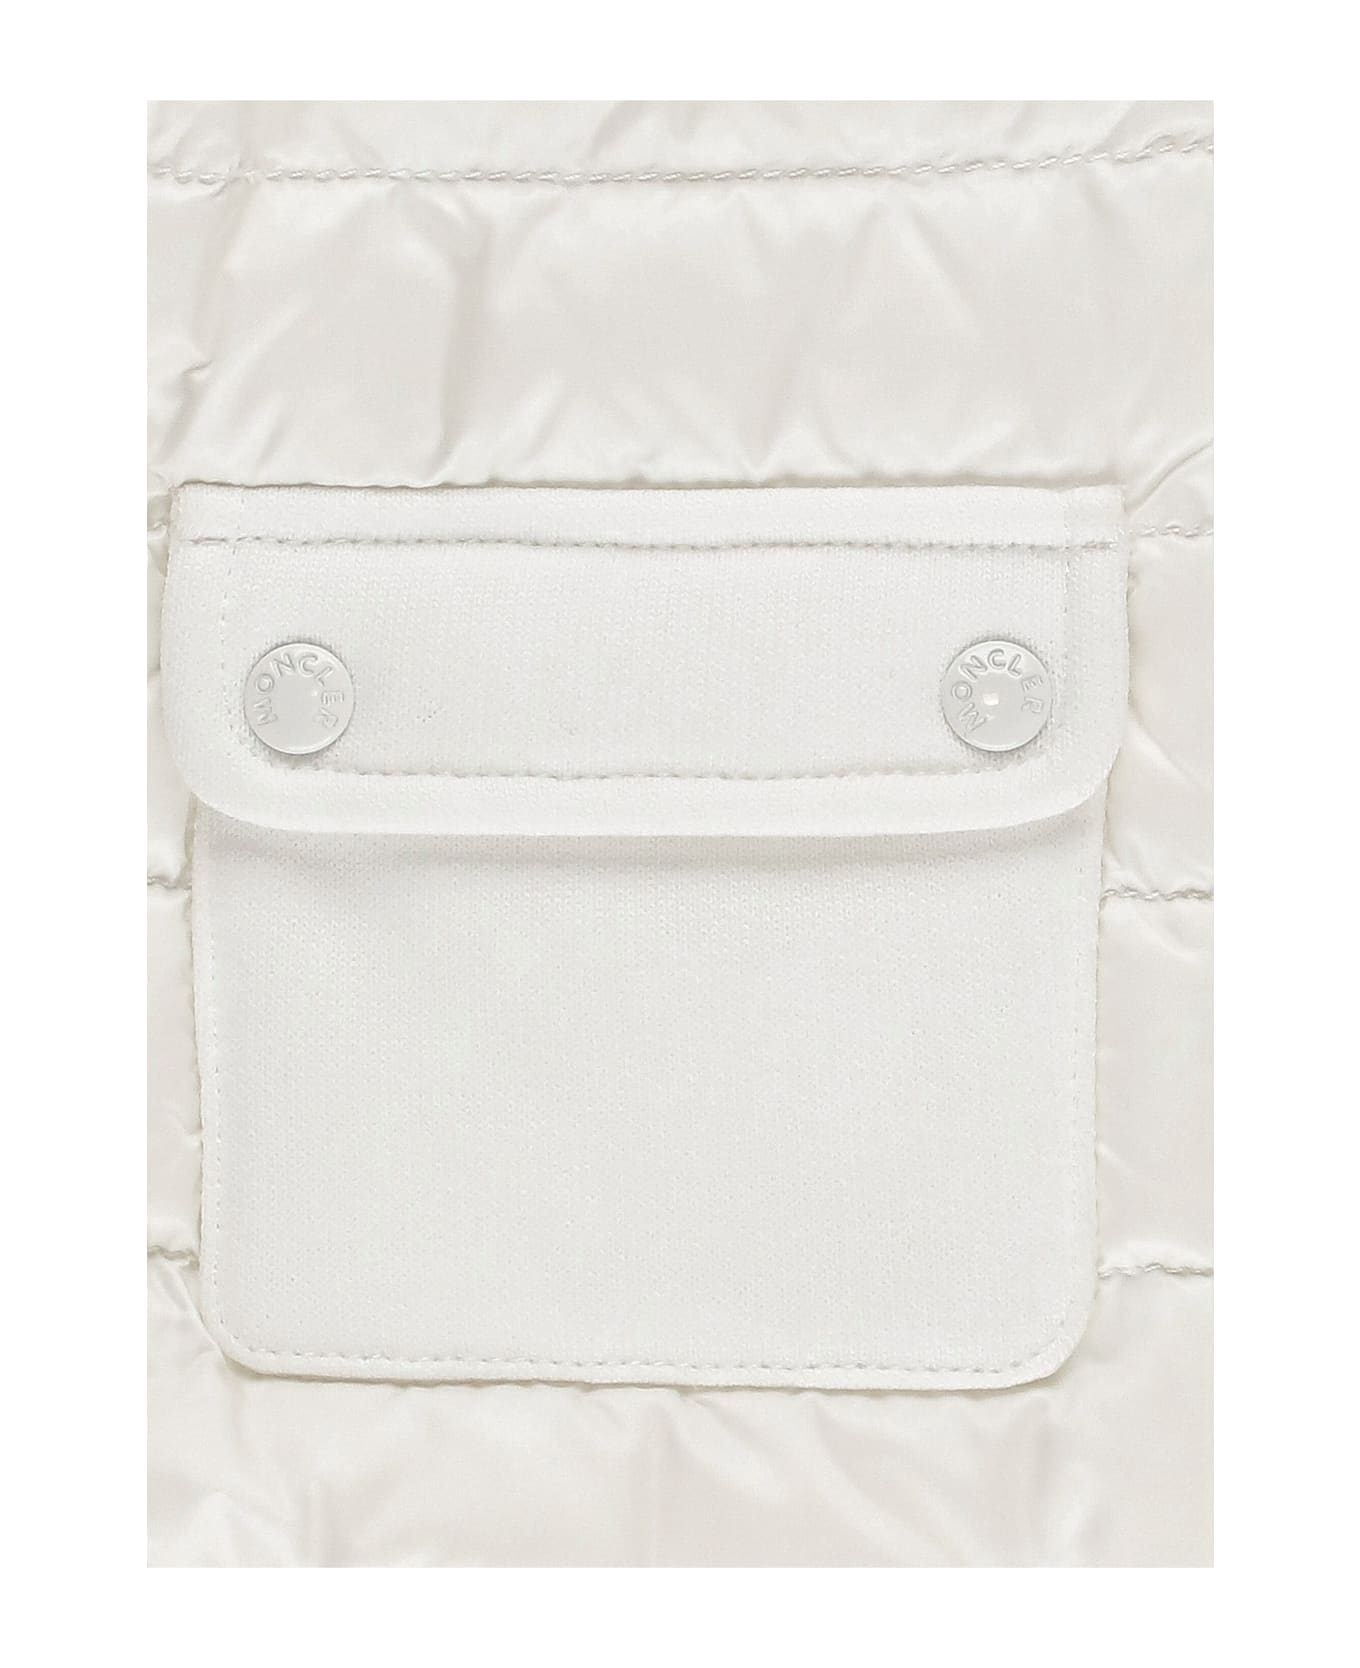 Moncler Padded Jacket With Logo - White ニットウェア＆スウェットシャツ